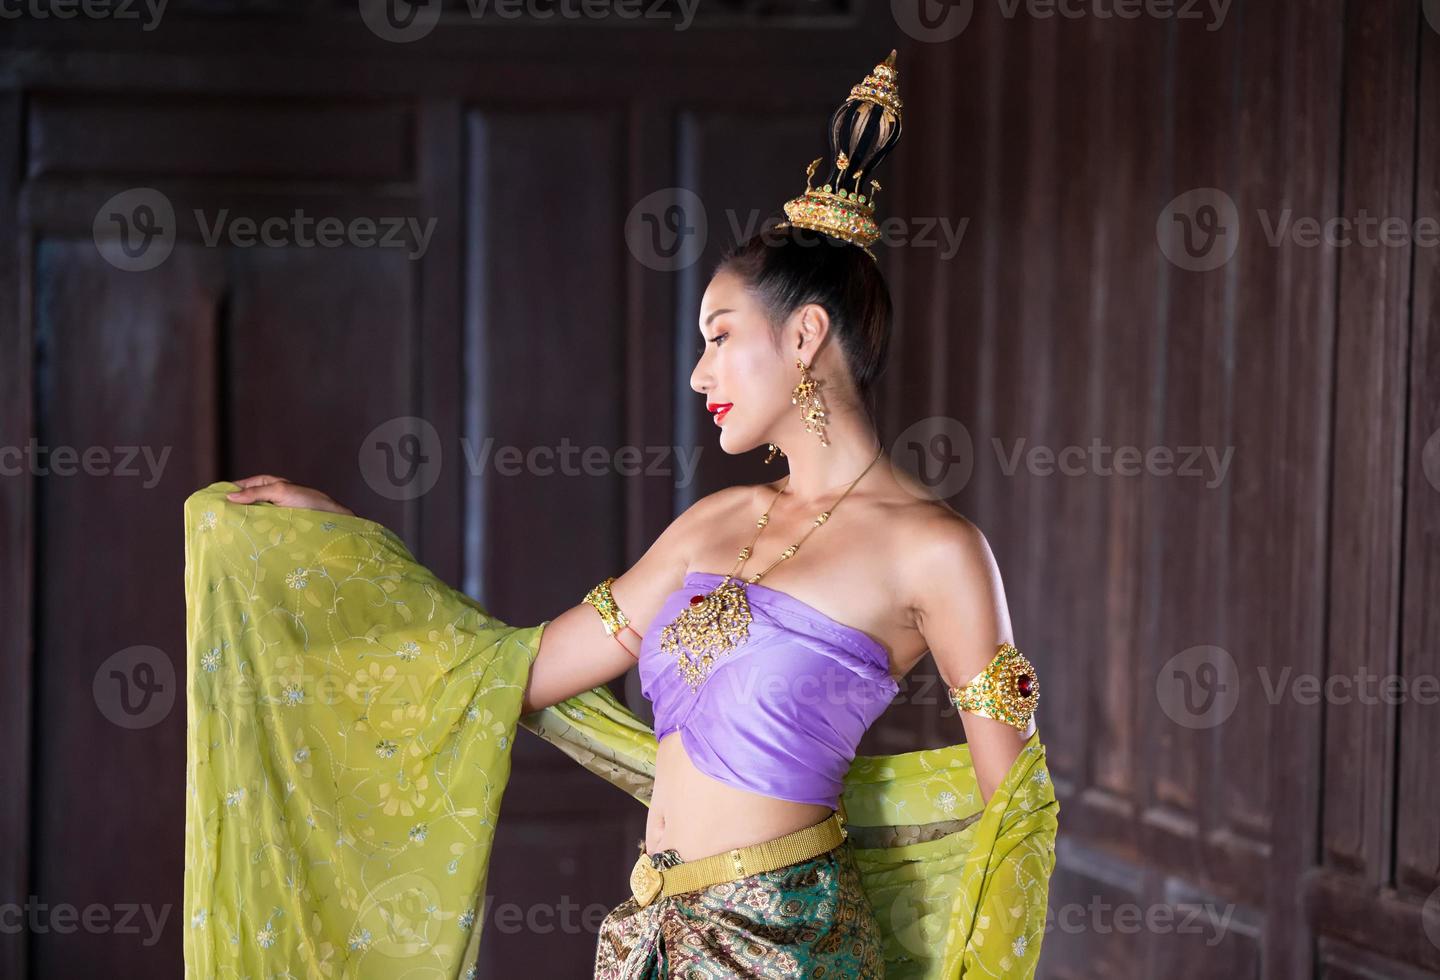 junge asiatische frauen in traditioneller kleidung im boot und rosa lotusblumen im teich. schöne mädchen in traditioneller tracht. thailändisches mädchen im retro-thailändischen kleid, thailändisches mädchen im traditionellen kostüm foto